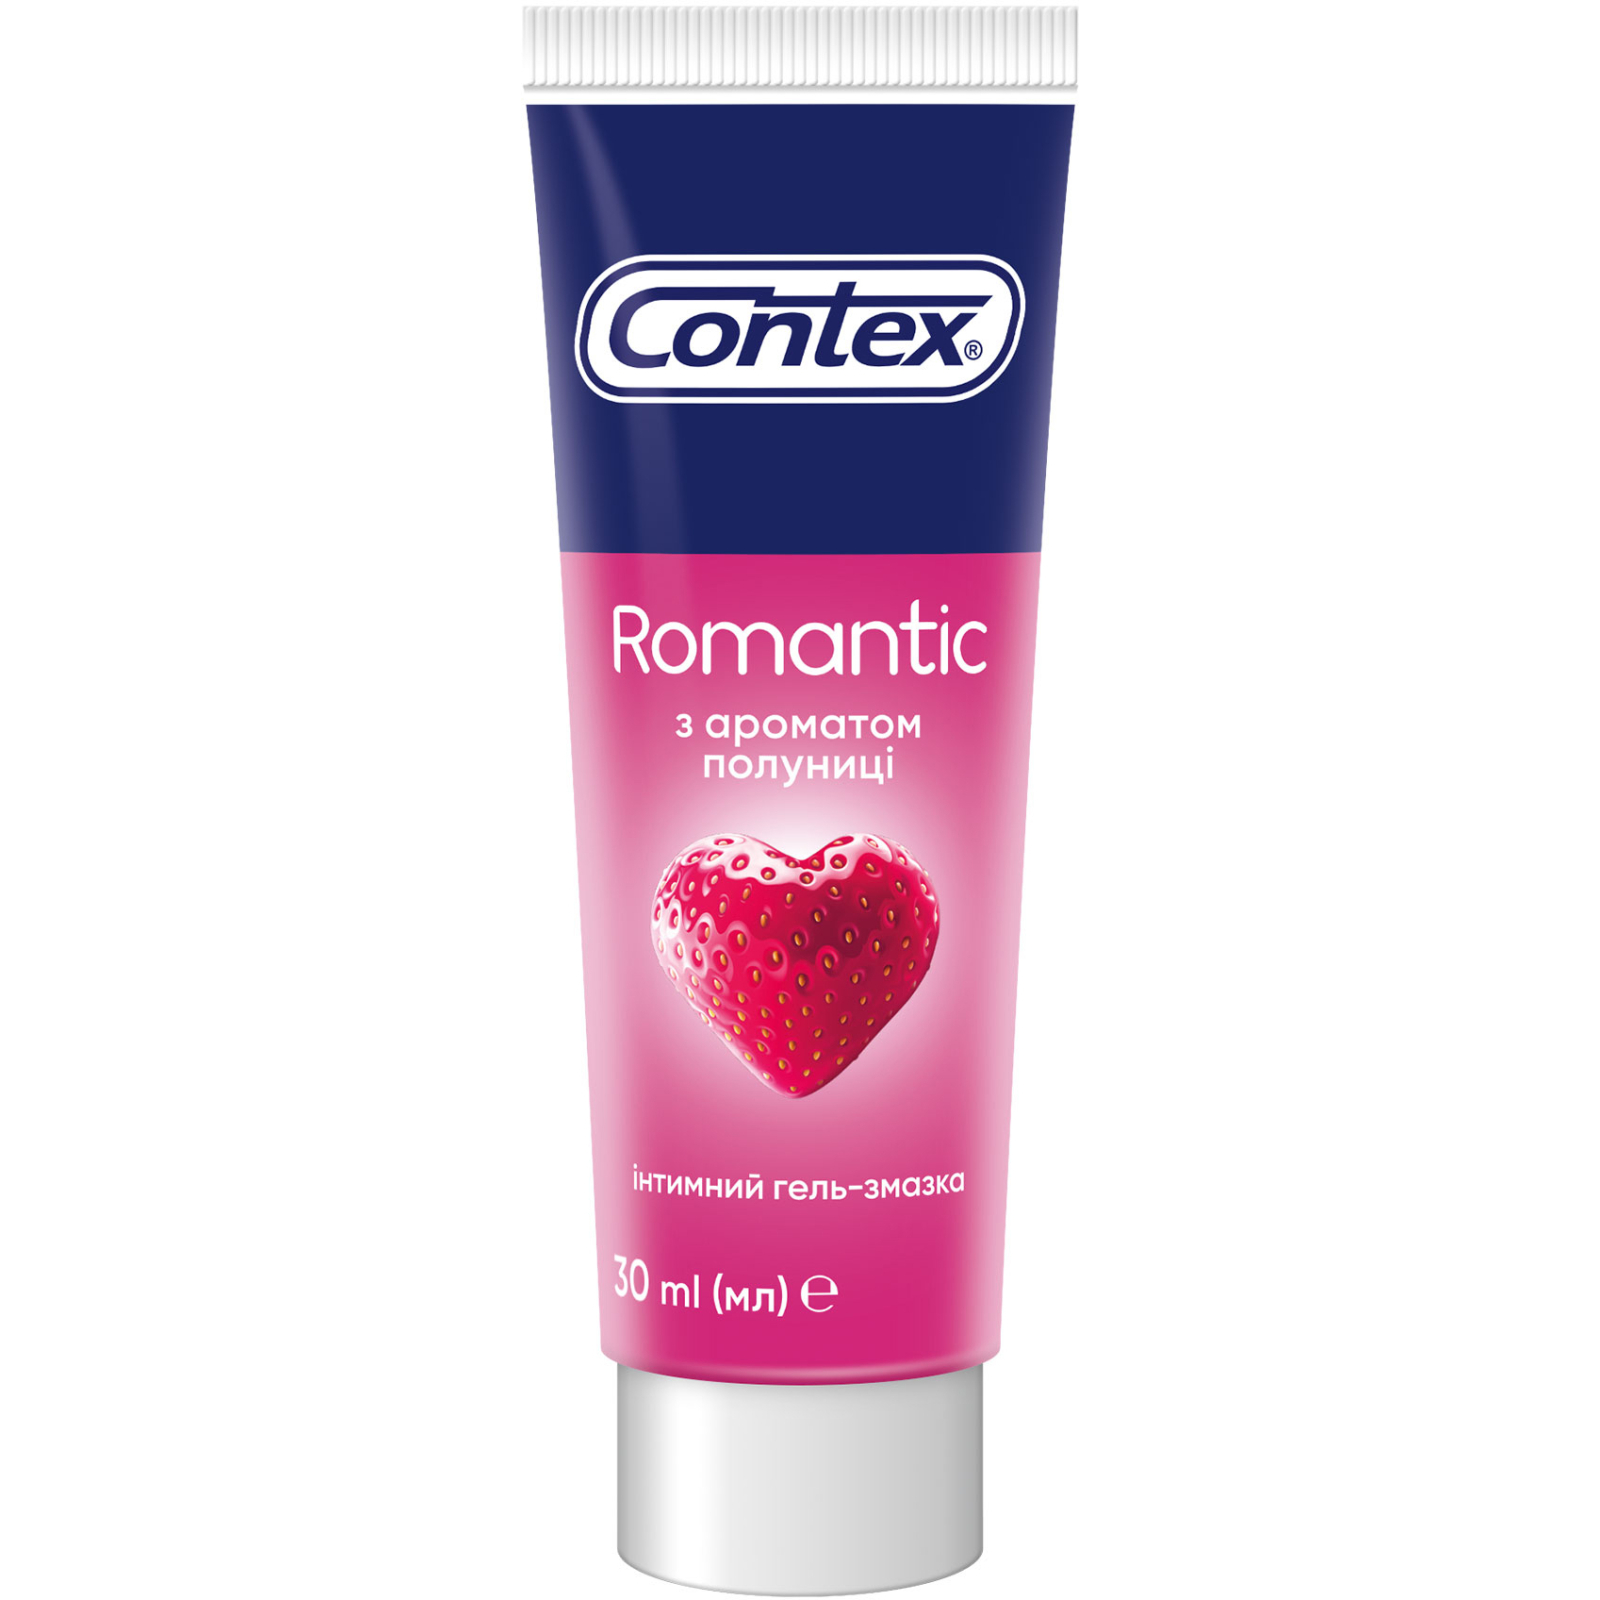 Интимный гель-смазка Contex Romantic с ароматом клубники (лубрикант) 30 мл (4820108005150)